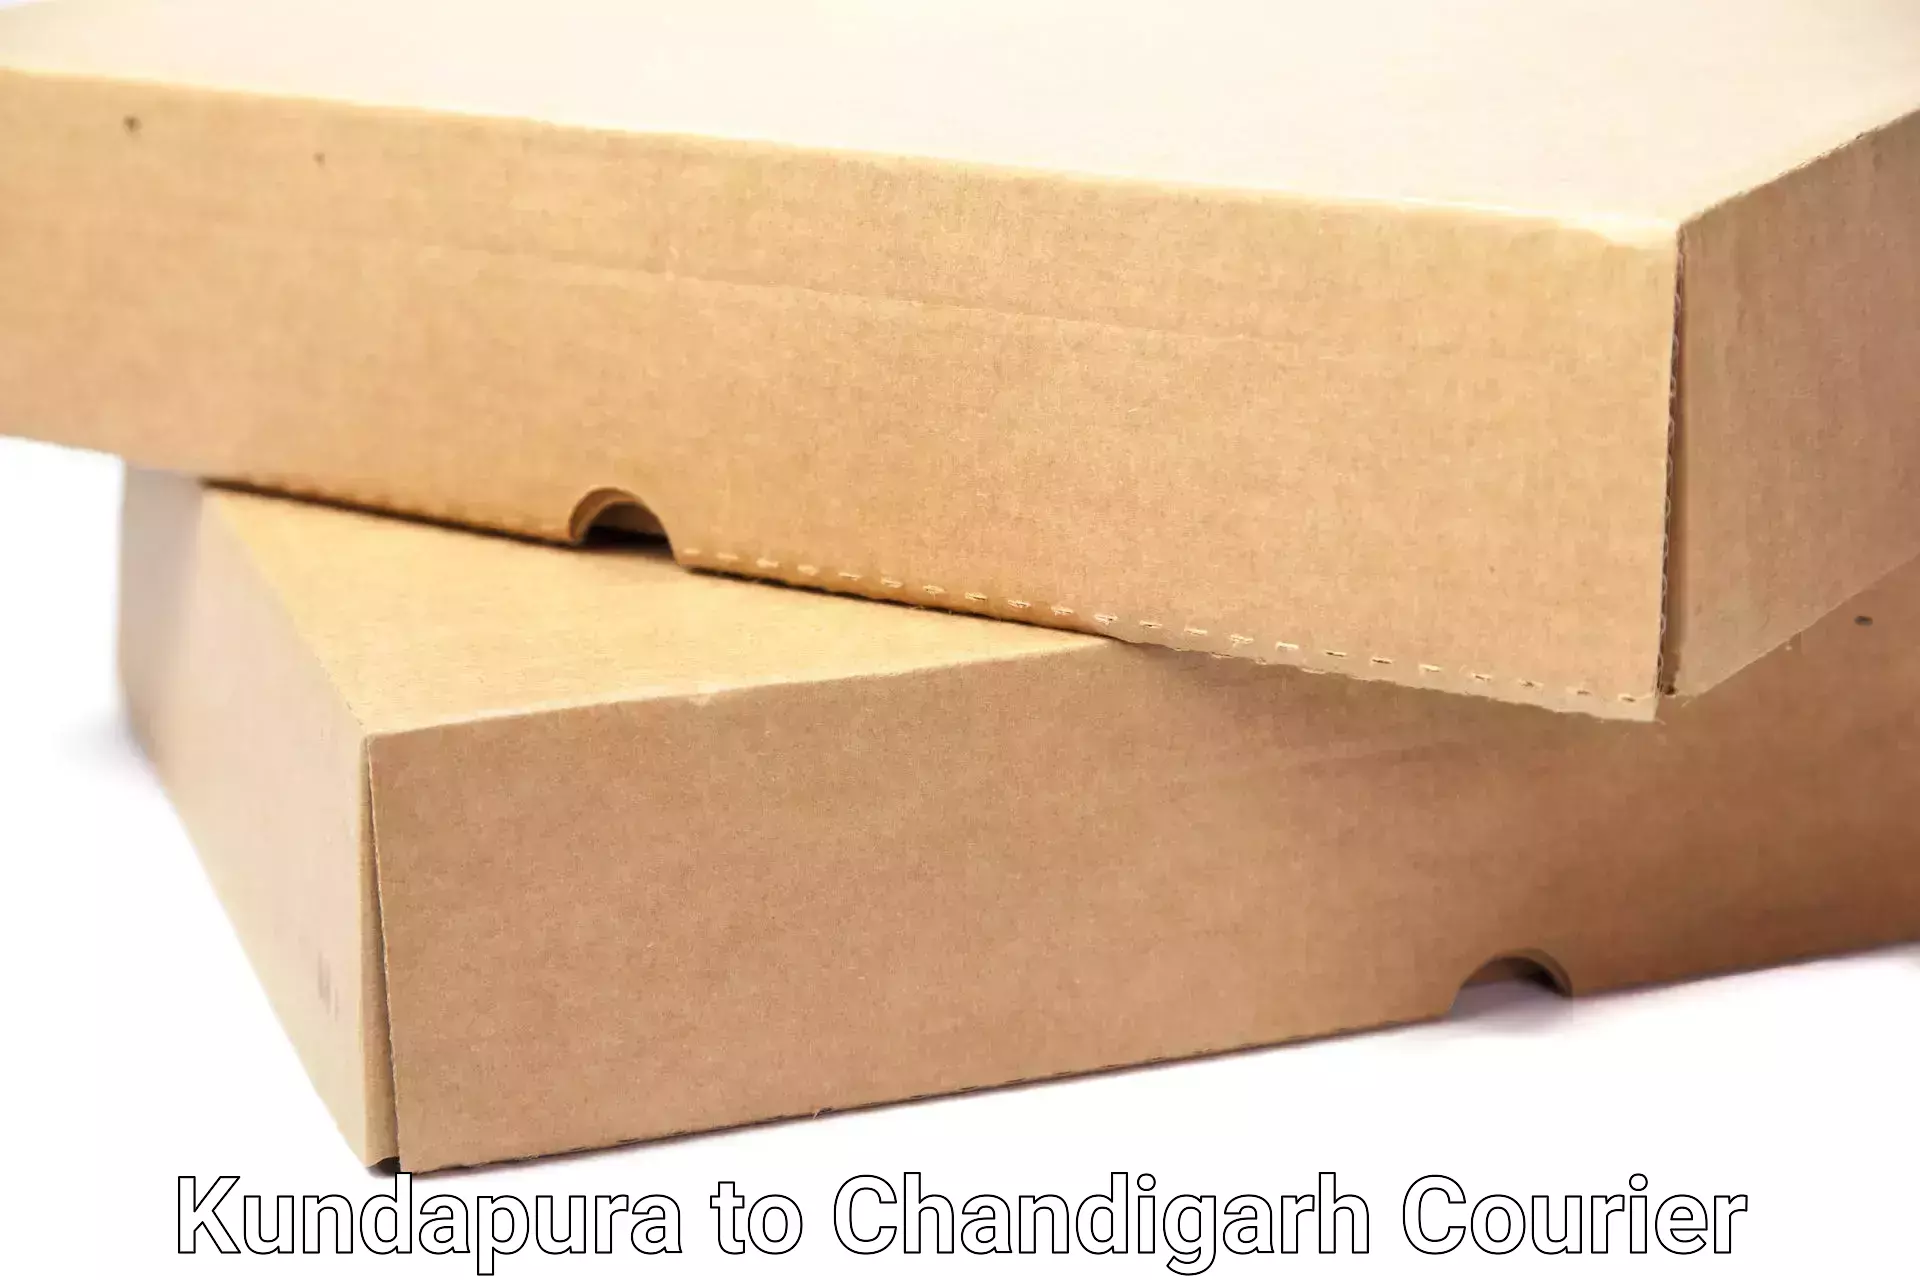 Full-service movers Kundapura to Chandigarh